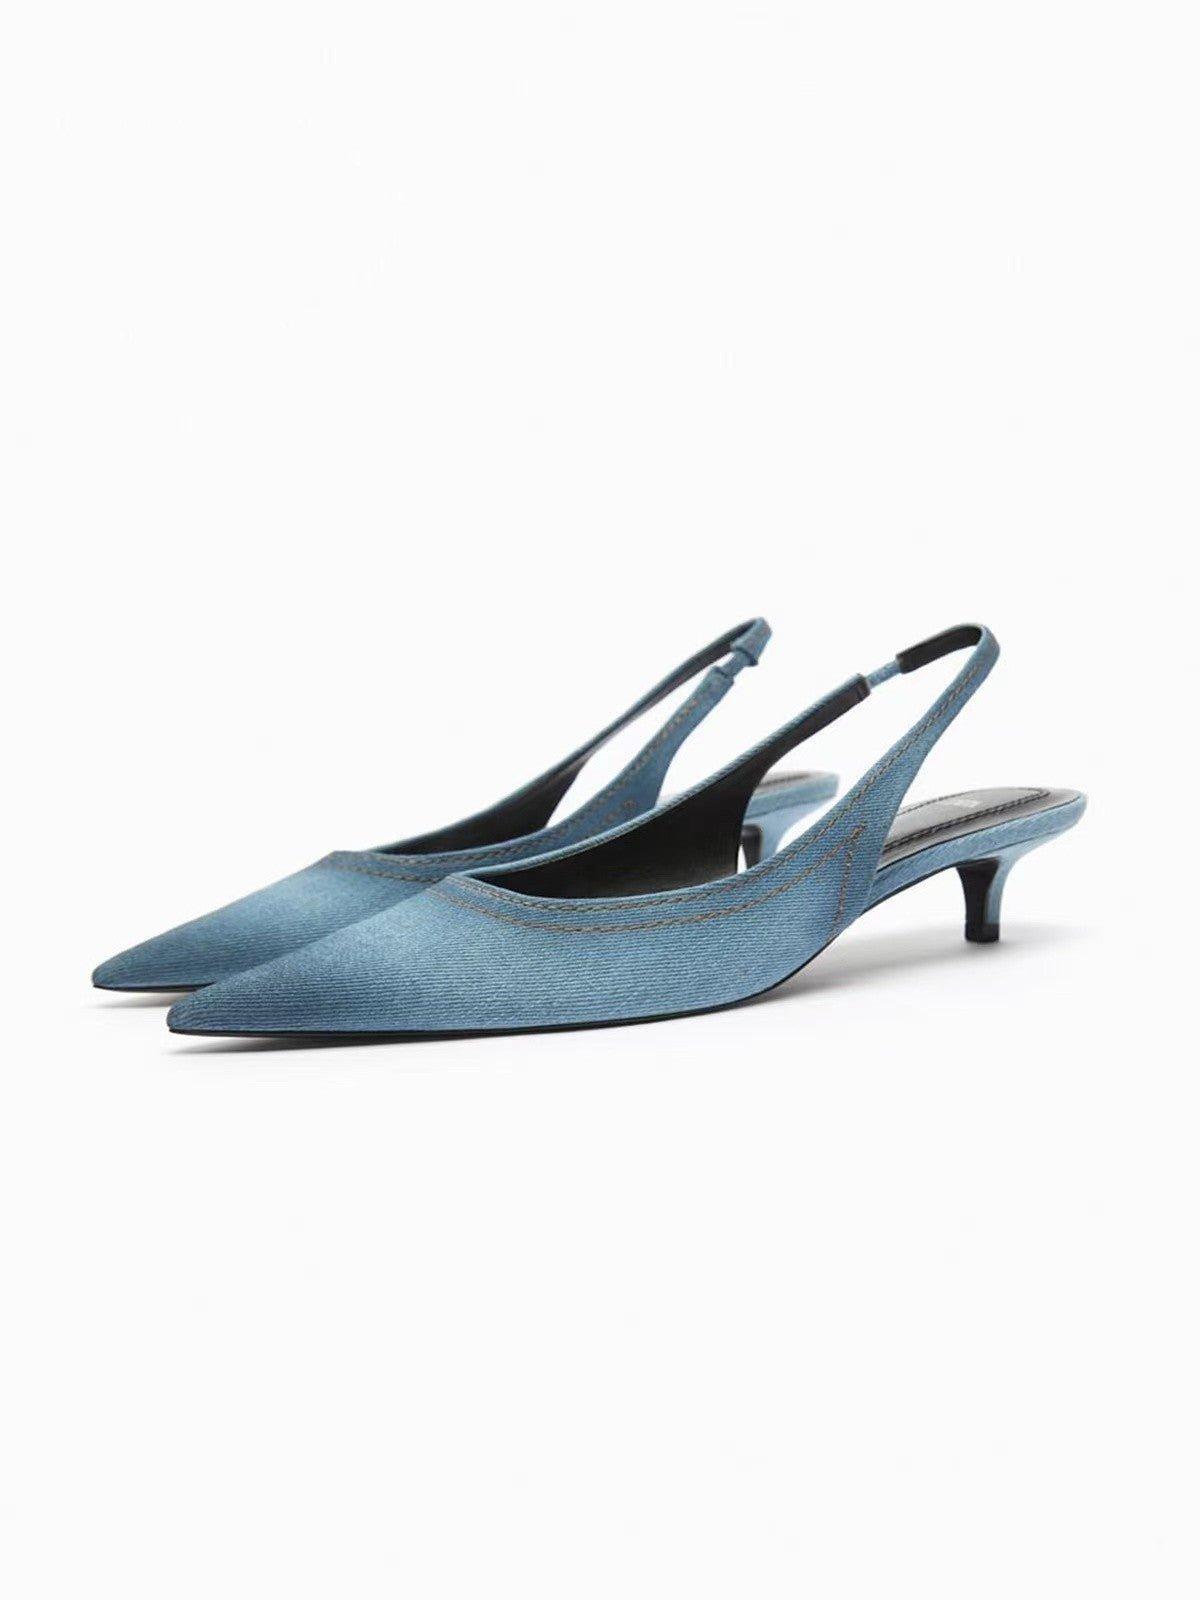 Women's Blue Denim Fabric High Heels | MODE BY OH